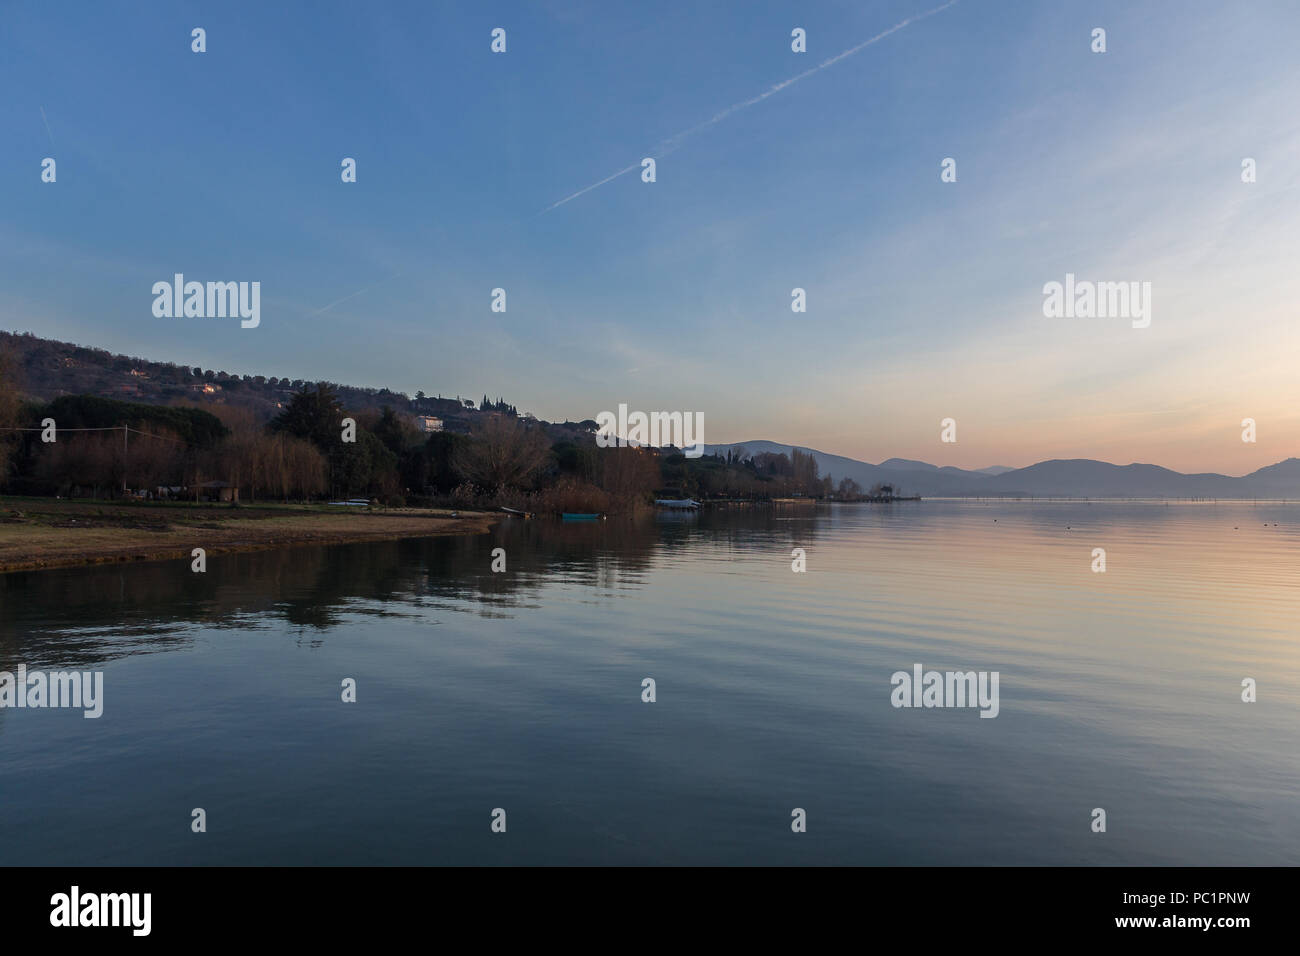 Ein Shooting für einen Sonnenuntergang über einem See, mit schönen, warmen Farben und viele diagonalen Linien durch Wolken und Wasser Wellen erstellt Stockfoto